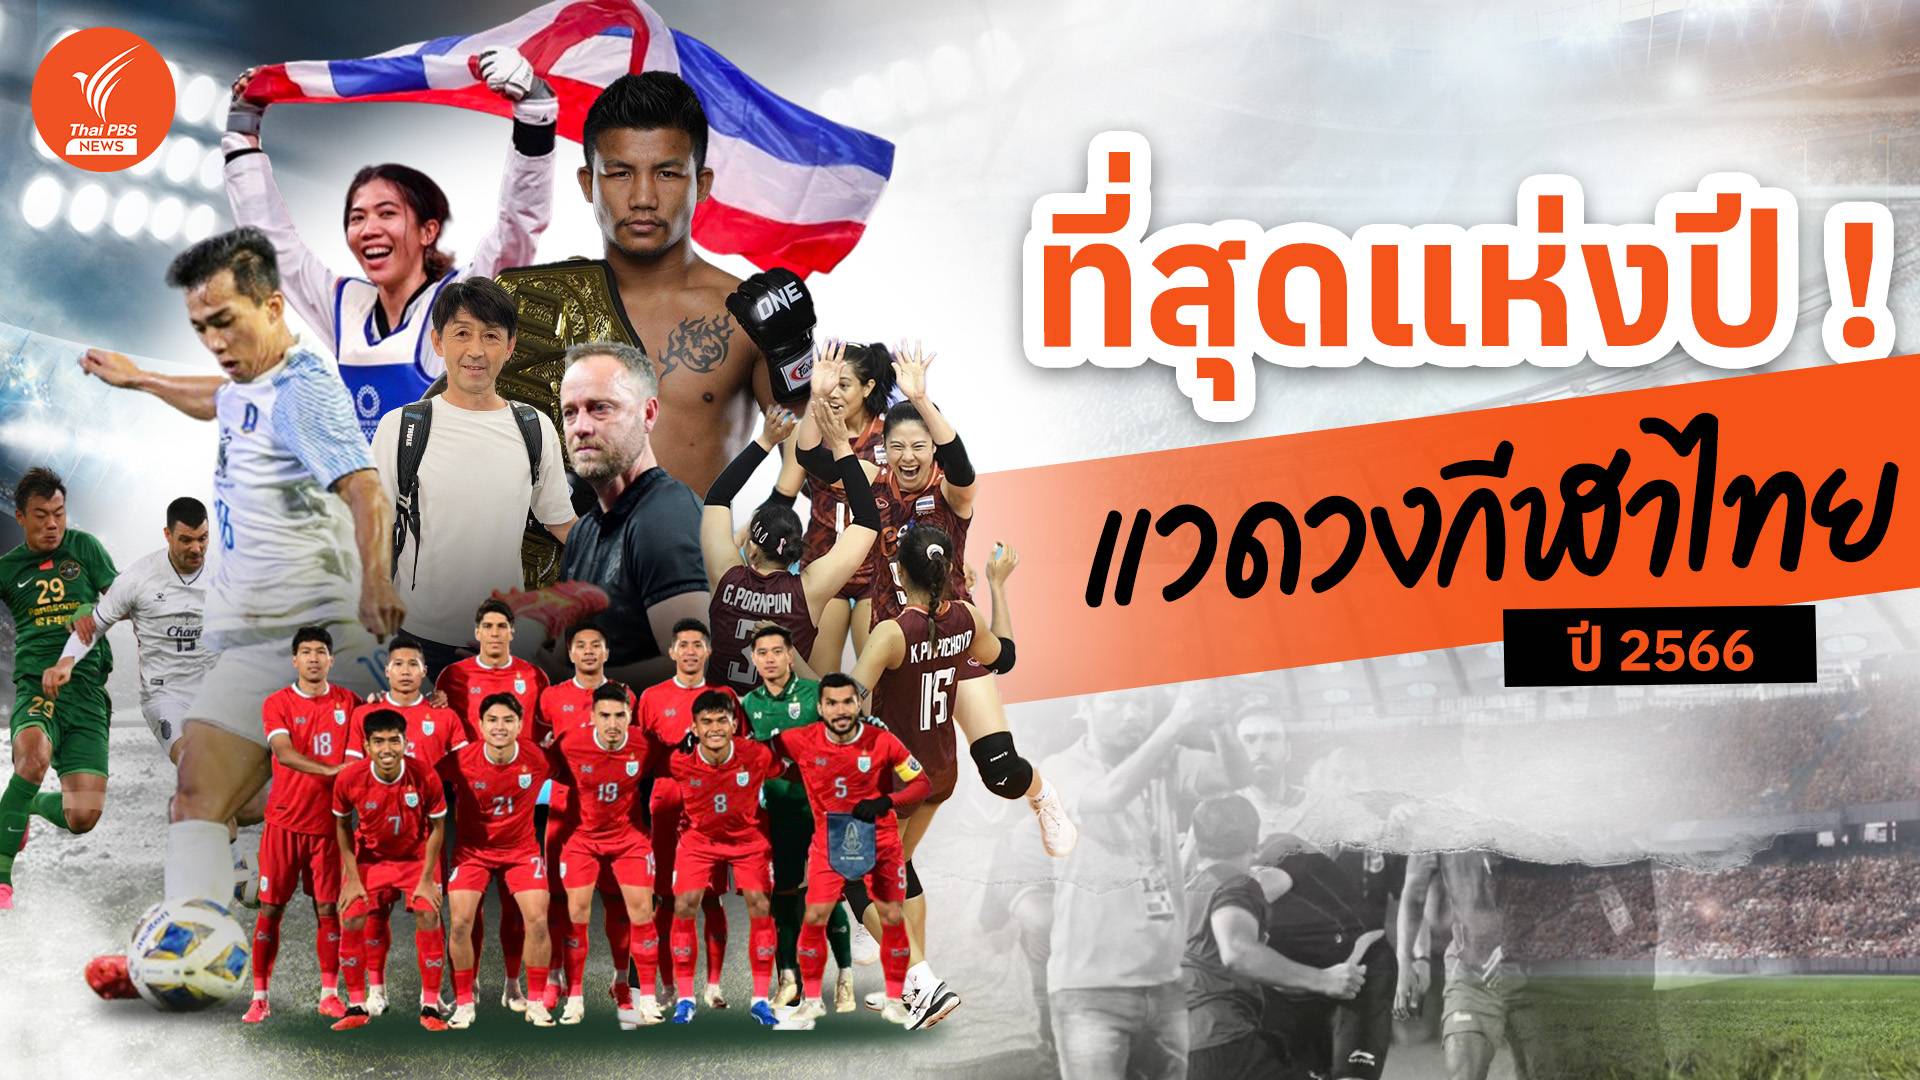 10 ที่สุดแห่งปี แวดวงกีฬาไทย ปี 2566 